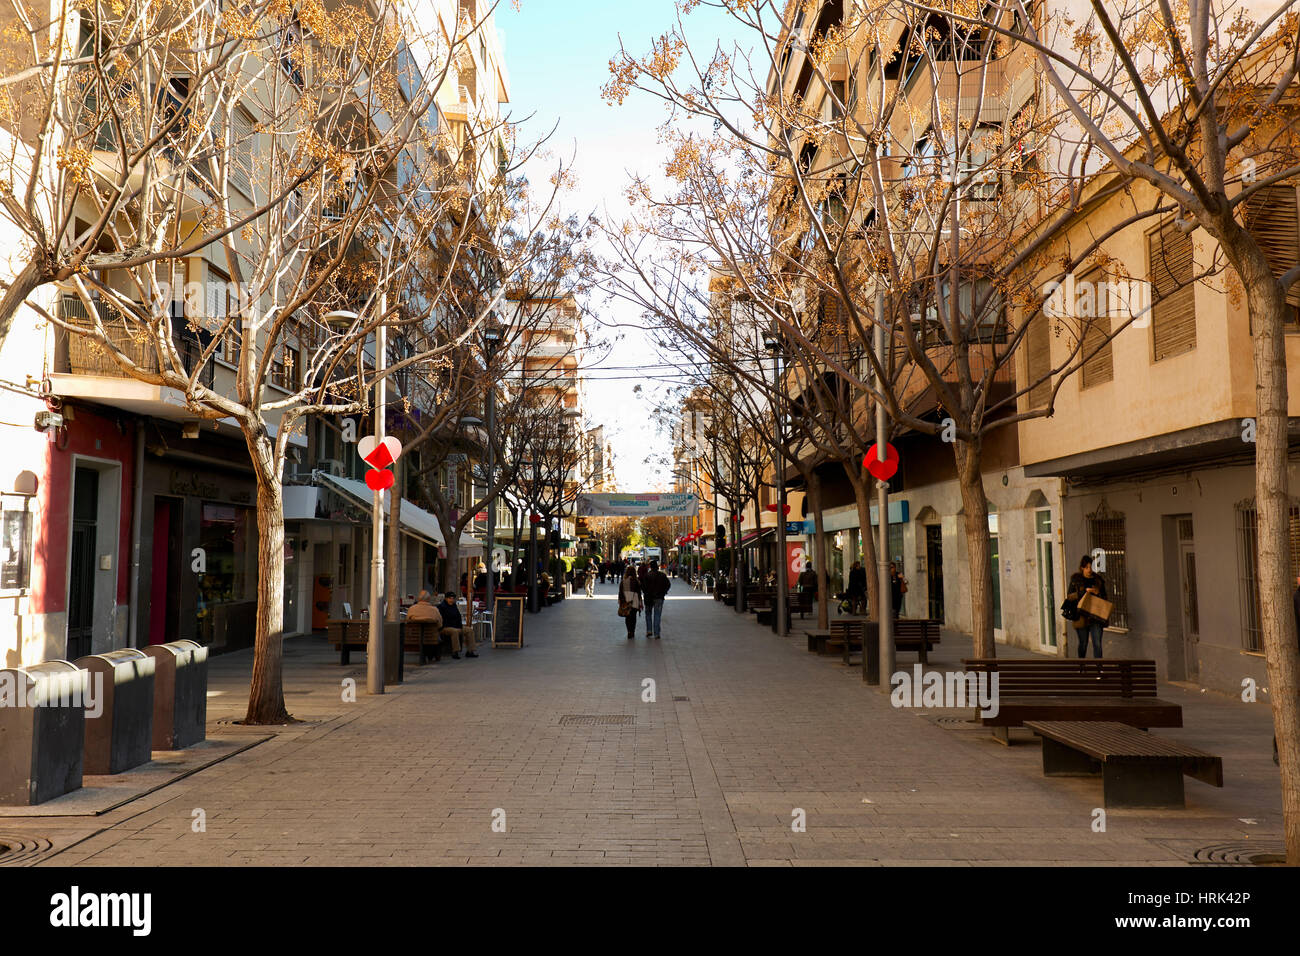 San Vicente del Raspeig, España. Febrero 14, 2017: Vista de una calle en el  municipio de San Vicente del Raspeig en la provincia de Alicante, España  Fotografía de stock - Alamy